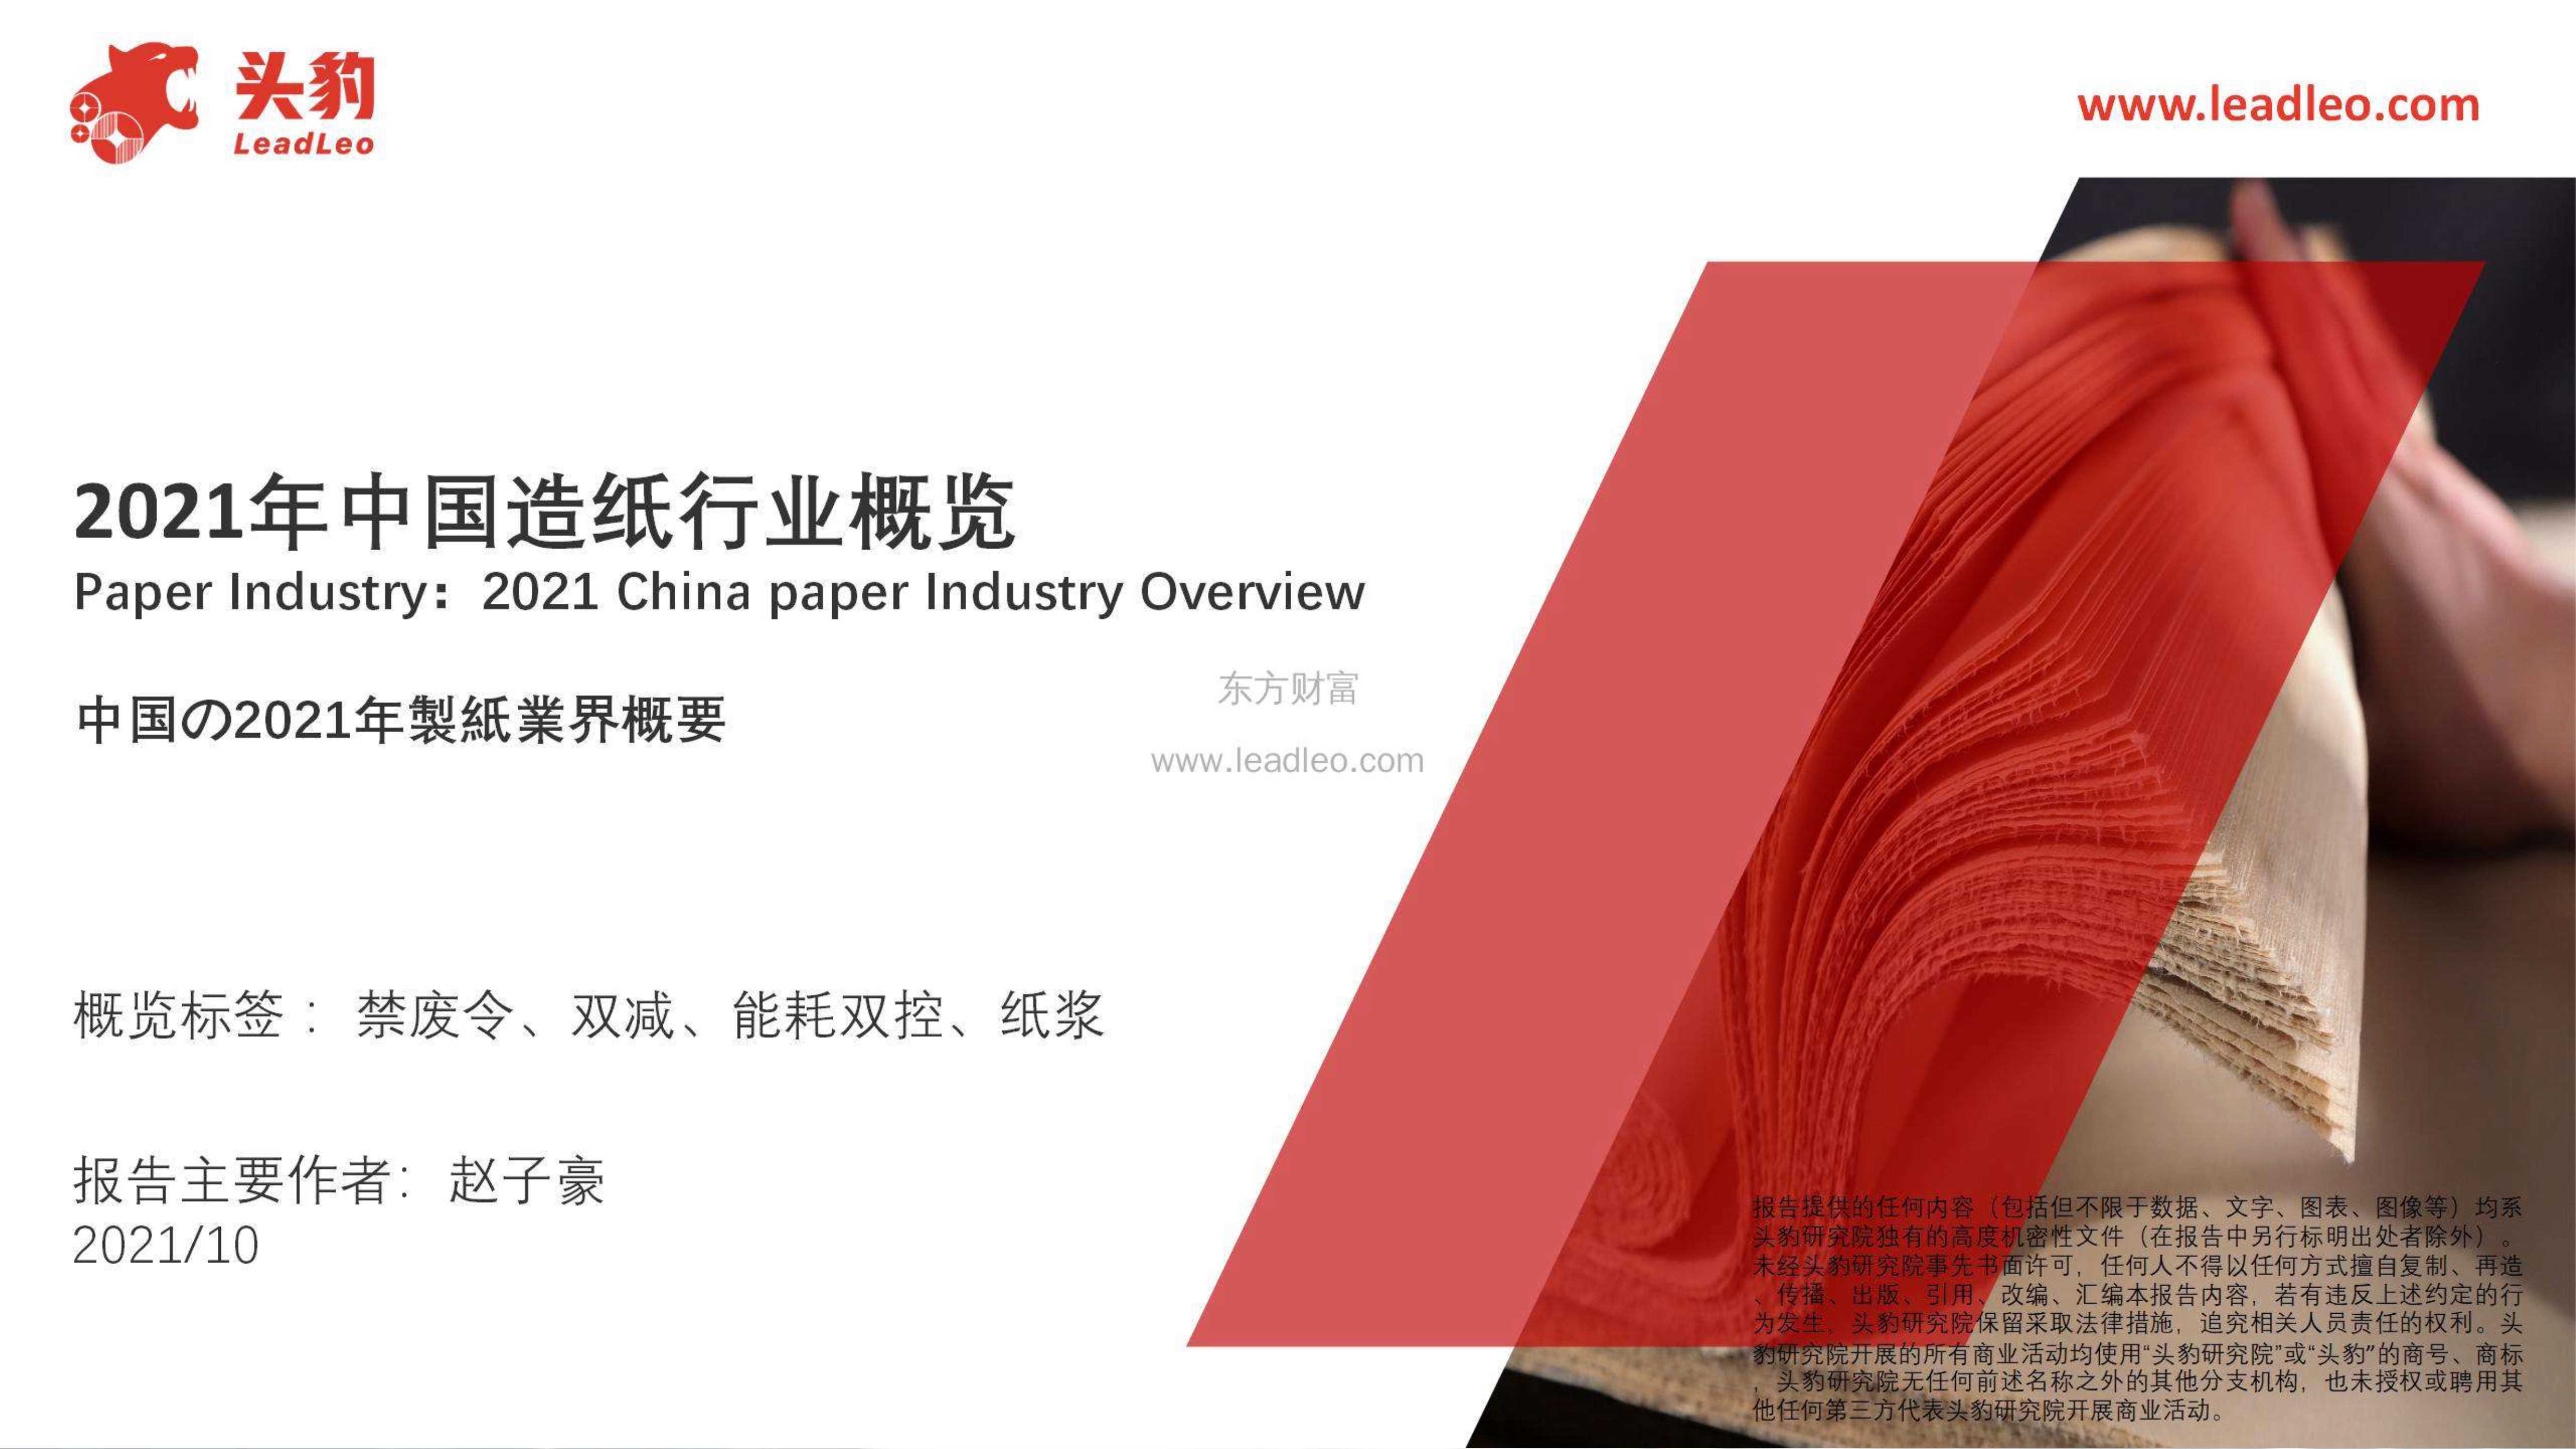 头豹研究院-2021年中国造纸行业概览-2021.11-39页